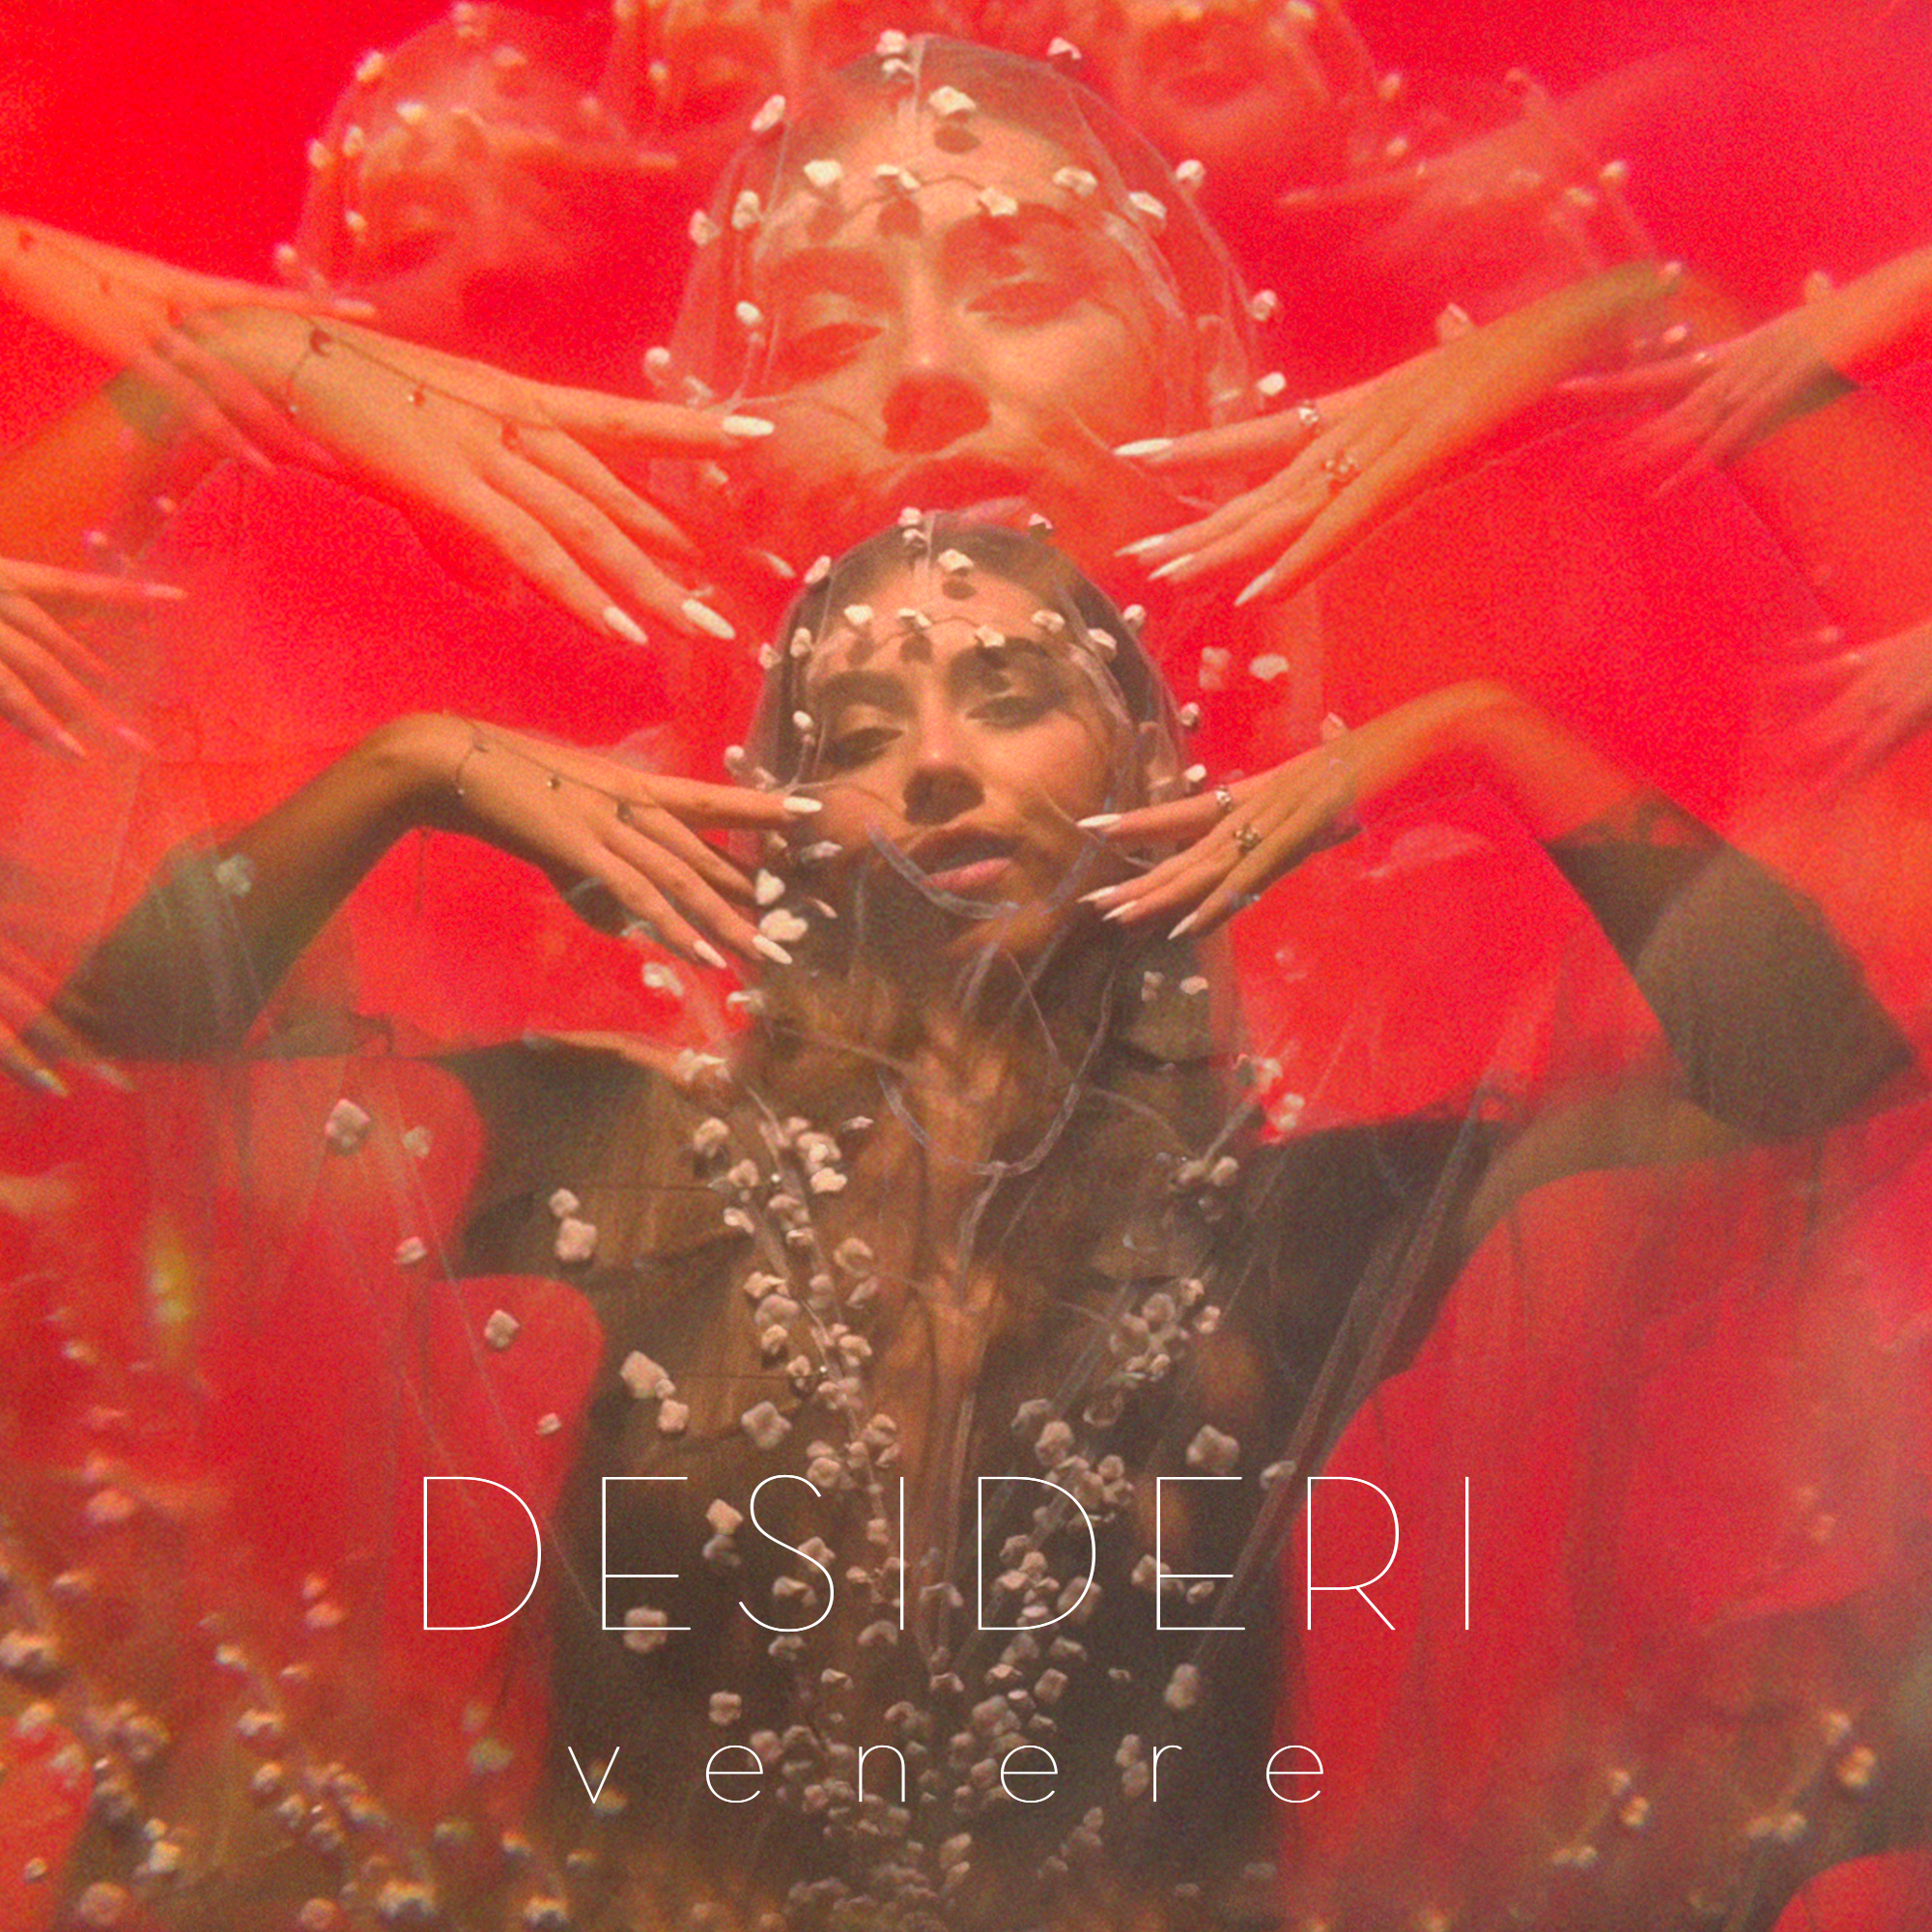 Venere pubblica su tutti i digital stores il nuovo singolo “Desideri”